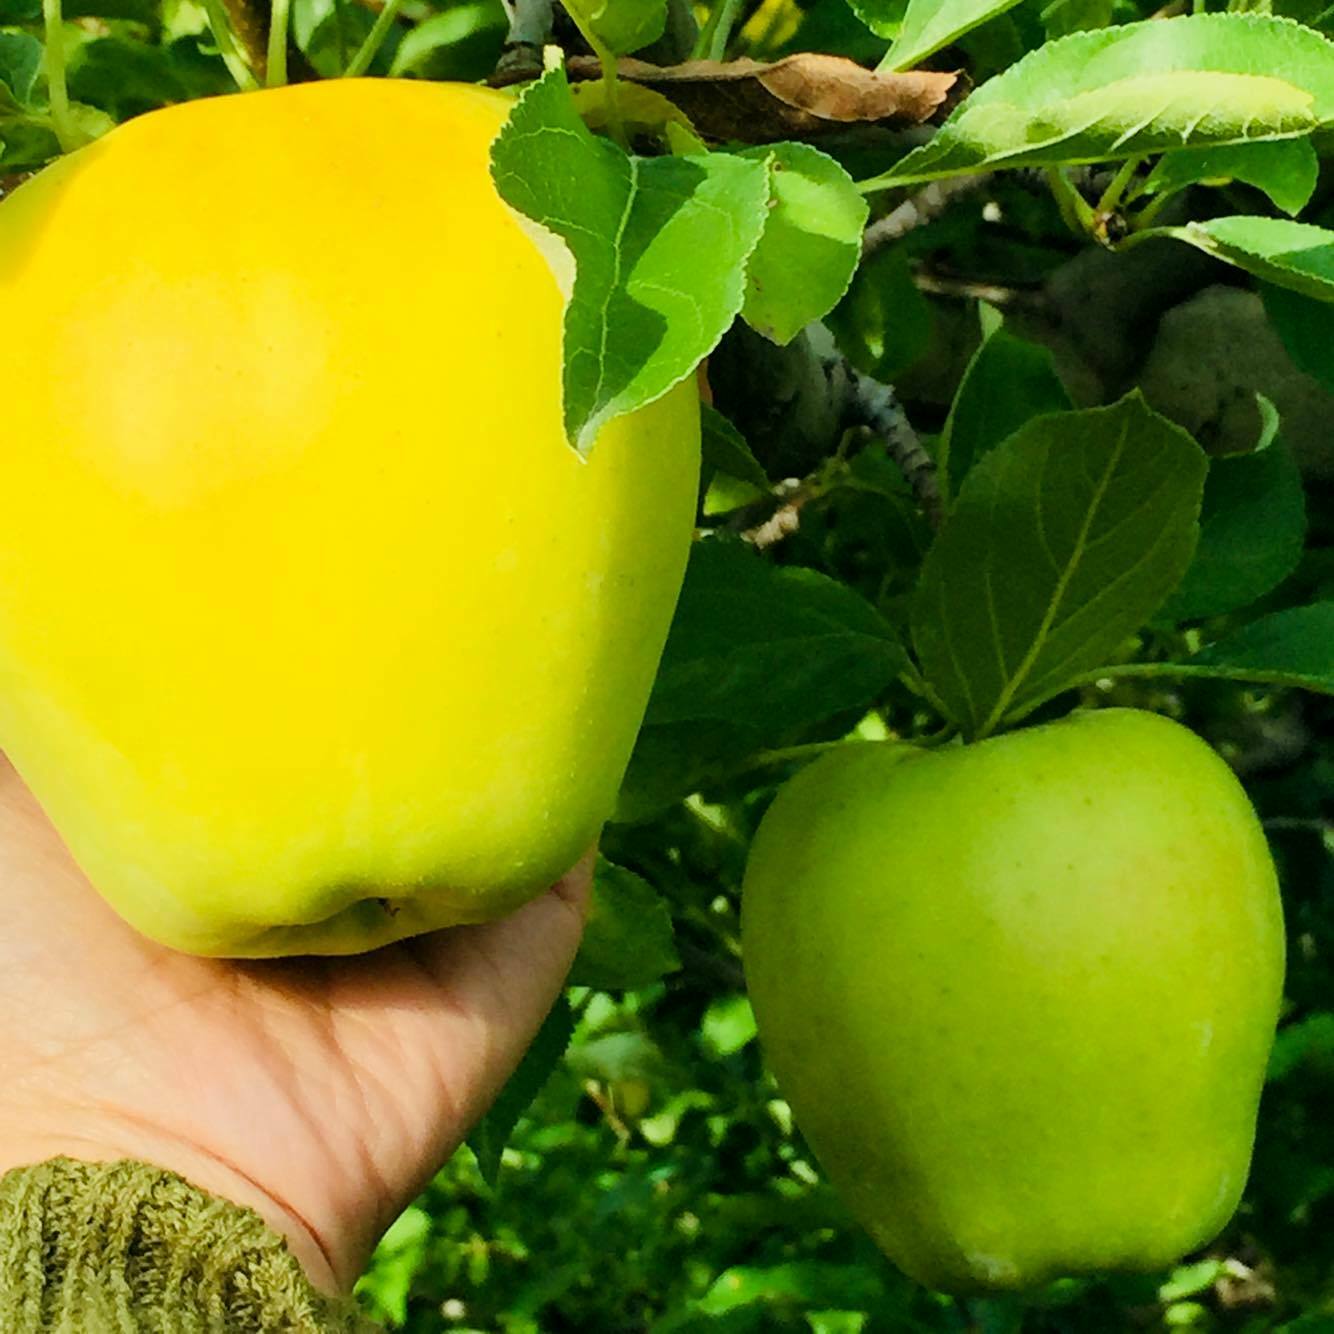 Hướng dẫn kỹ thuật canh tác cây táo đại một cách khoa học